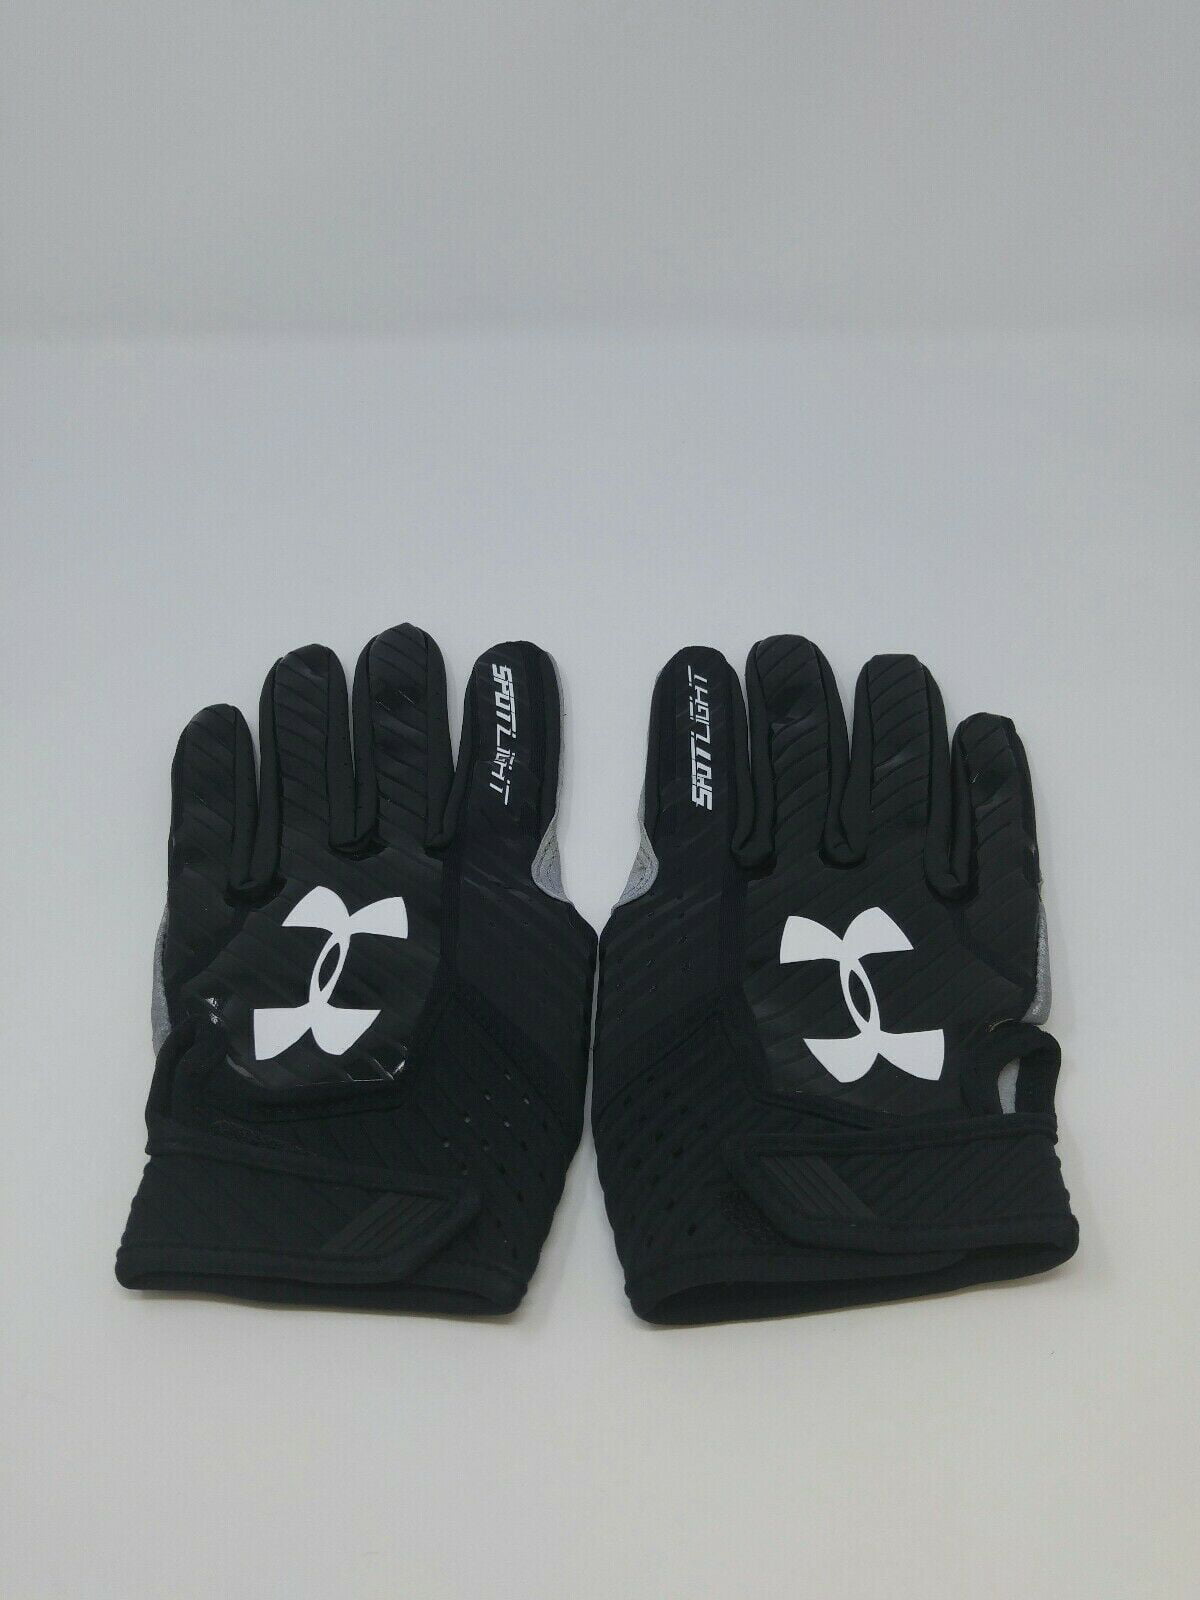 New Under Armour Men's Black/Black/White Spotlight Leather WR Football Gloves 